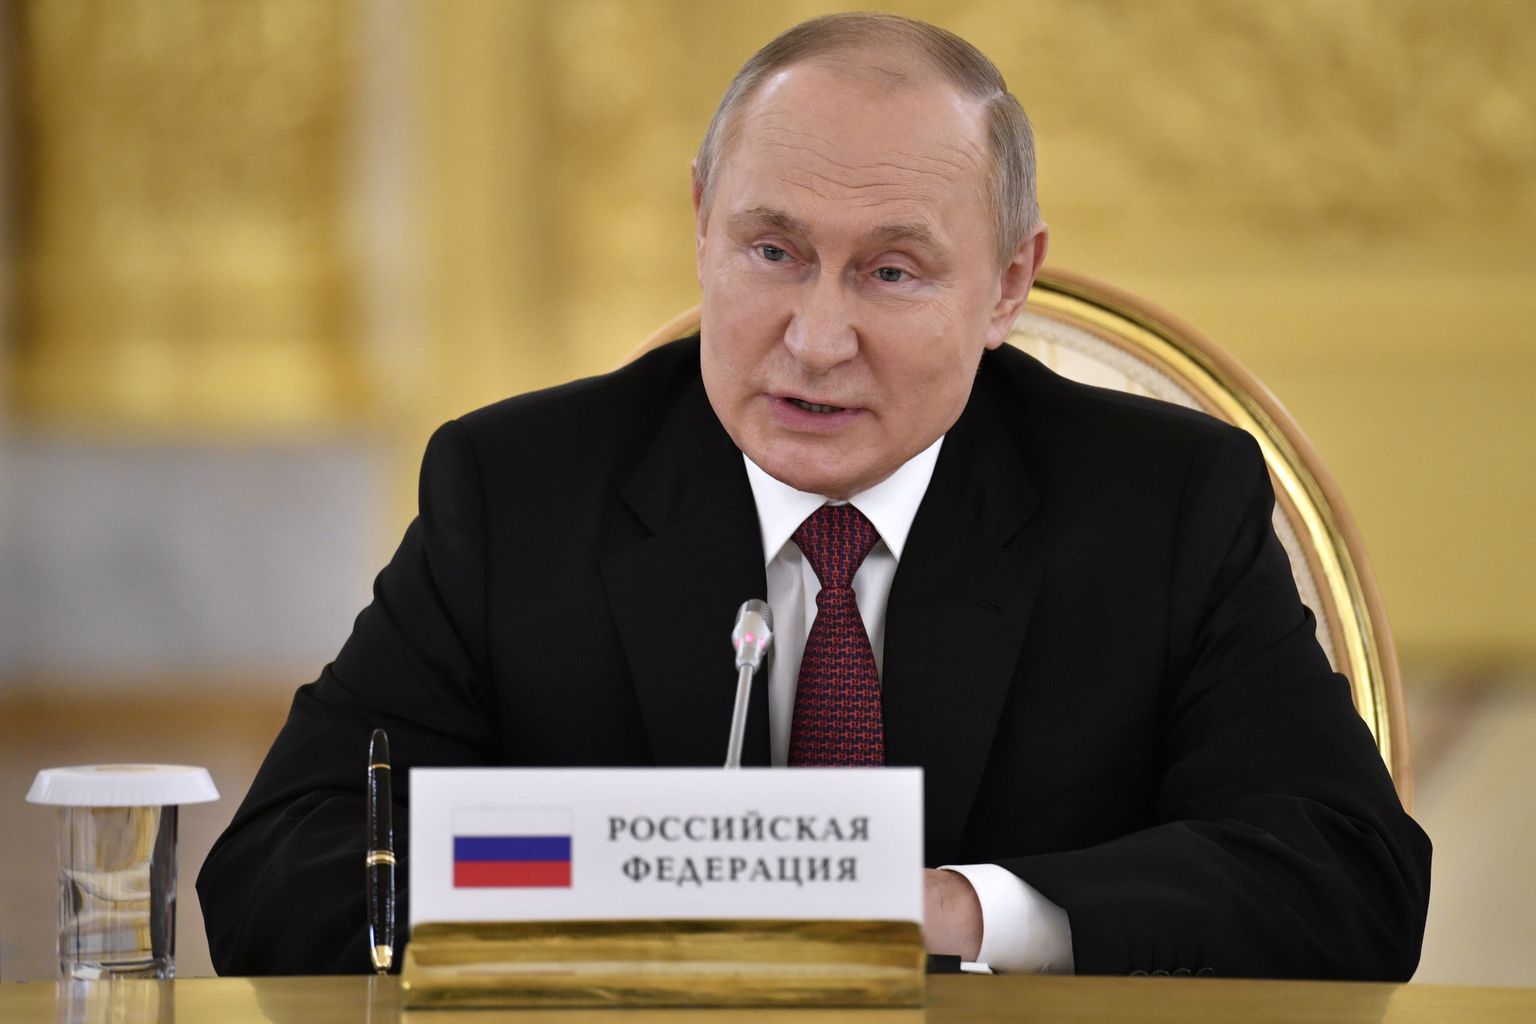 Venemaa president Vladimir Putin pidamas 16. mail 2022 kõnet Moskvas Kollektiivse Julgeoleku Lepingu Organisatsiooni kuuluvate riikide juhtide kohtumisel